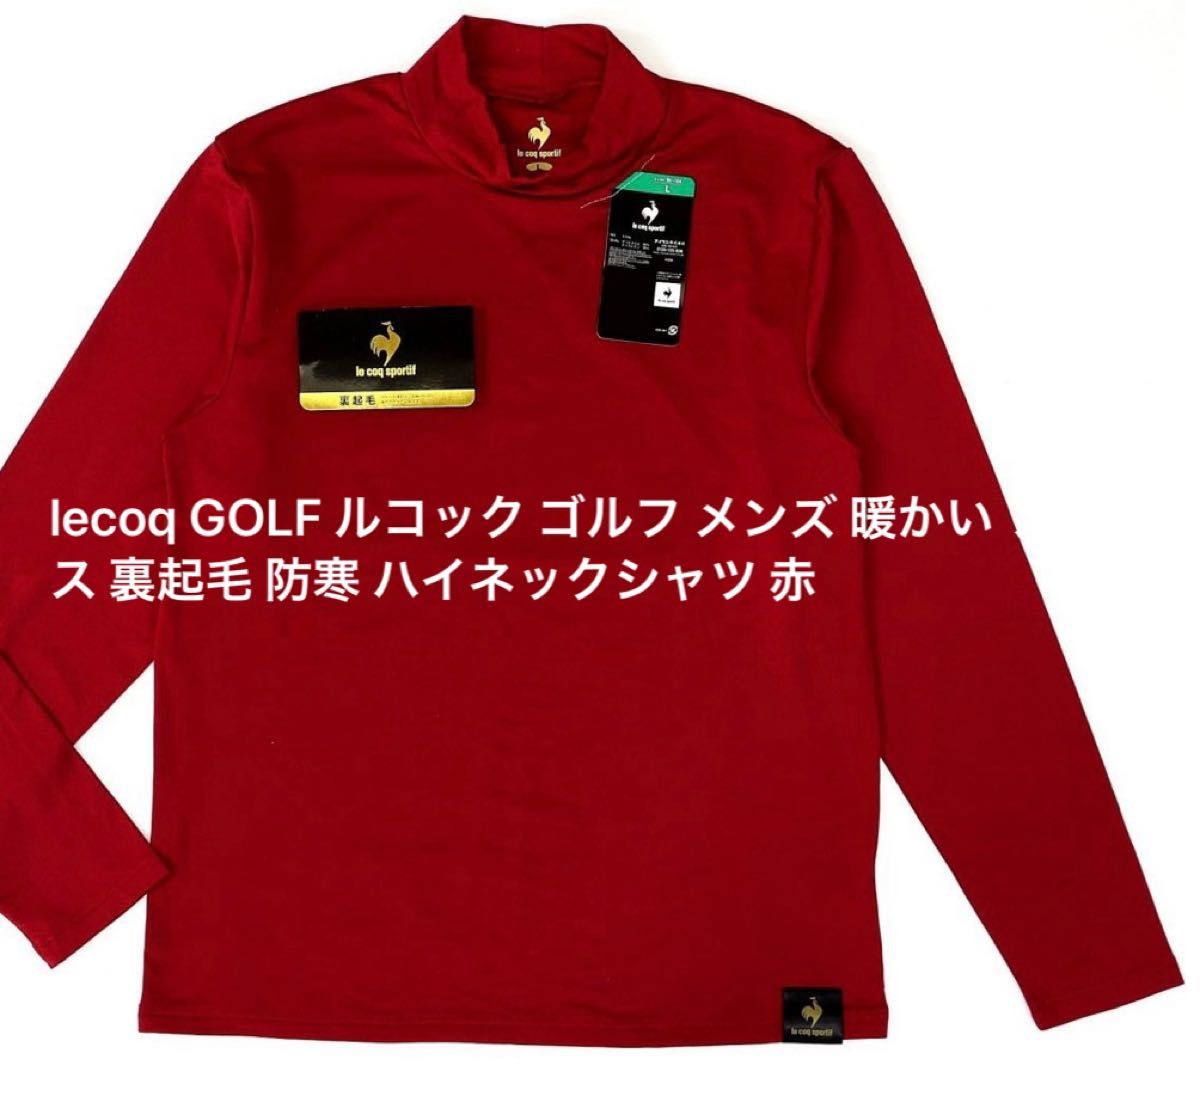 lecoq GOLF ルコック ゴルフ メンズ 暖かい フリース 裏起毛 防寒 ハイネックシャツ 赤 サイズM